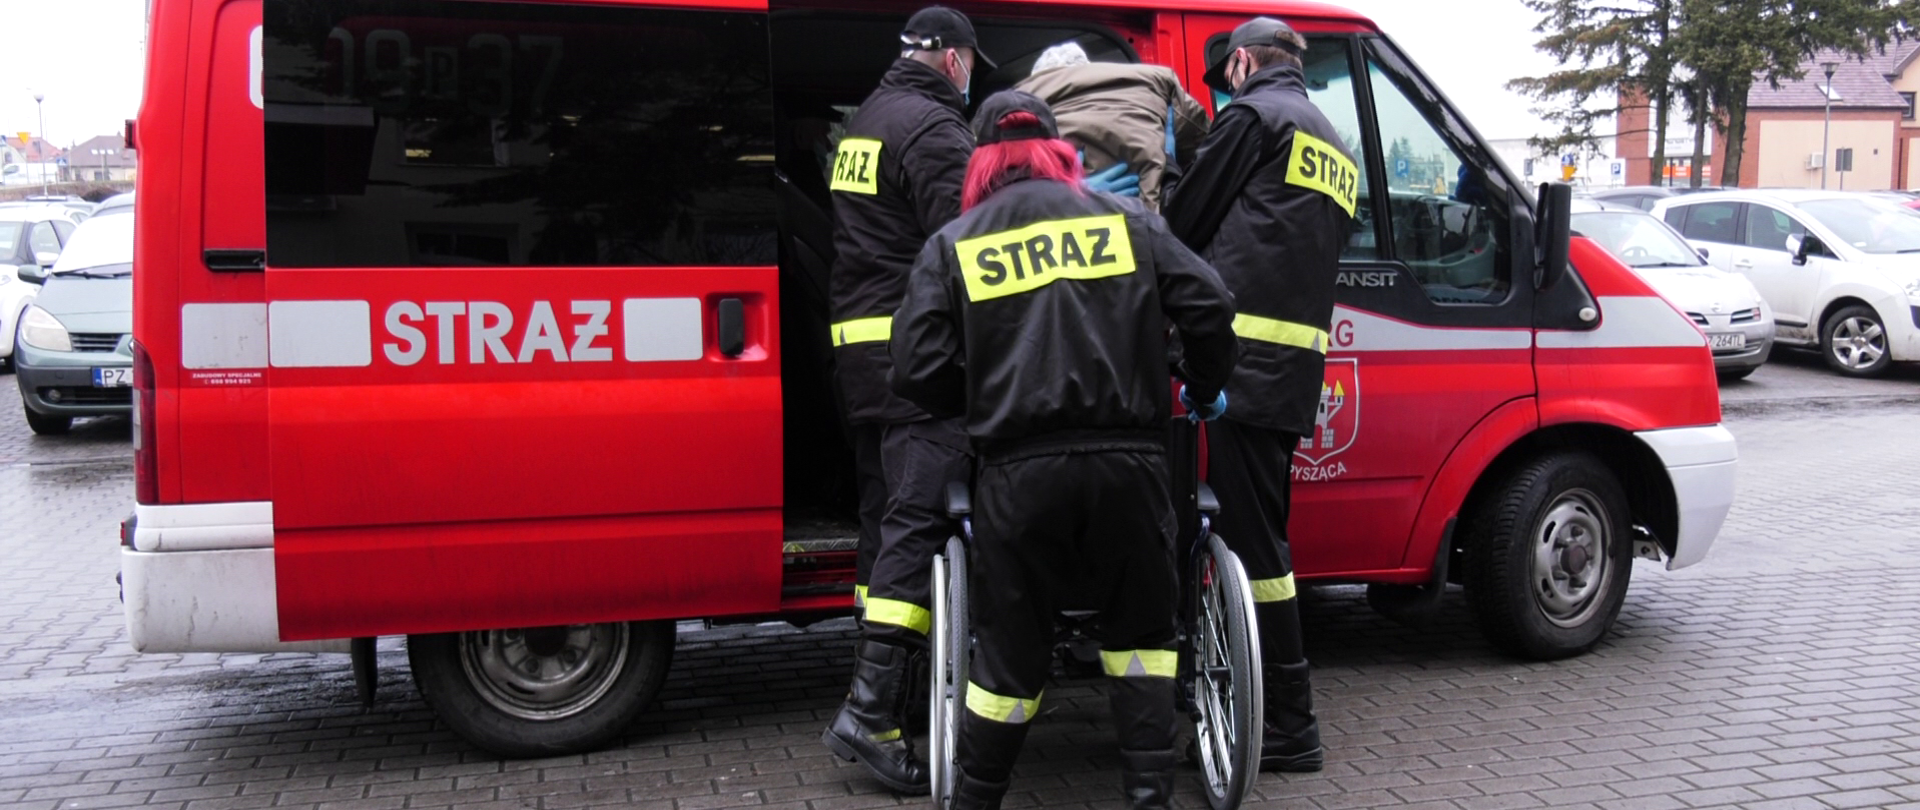 Na zdjęciu strażacy pomagają starszej osobie wsiąść do pojazdu celem transportu do punktu szczepień